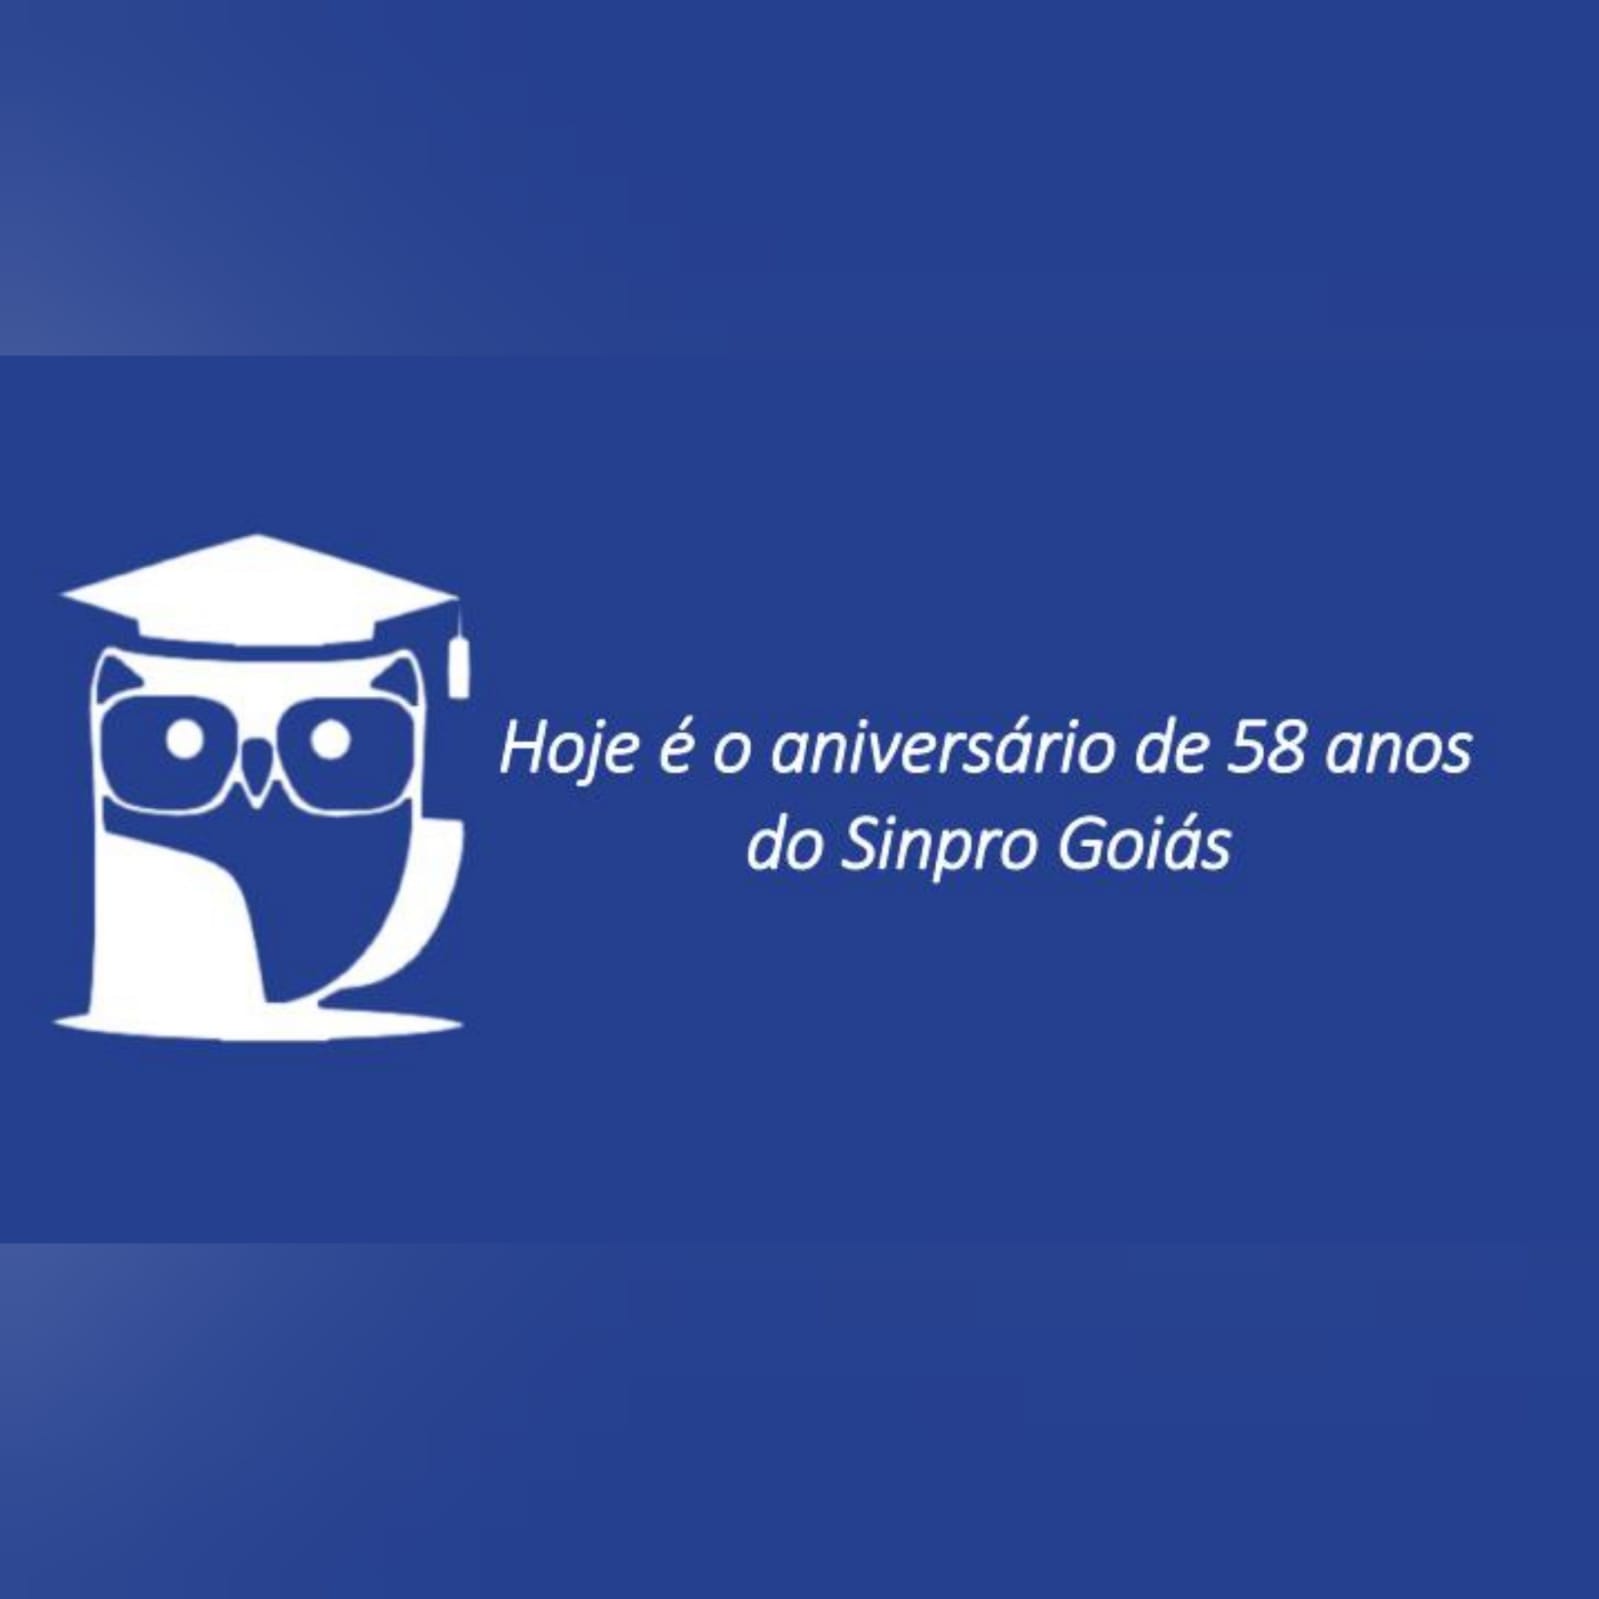 Hoje é o aniversário de 58 anos do Sinpro Goiás